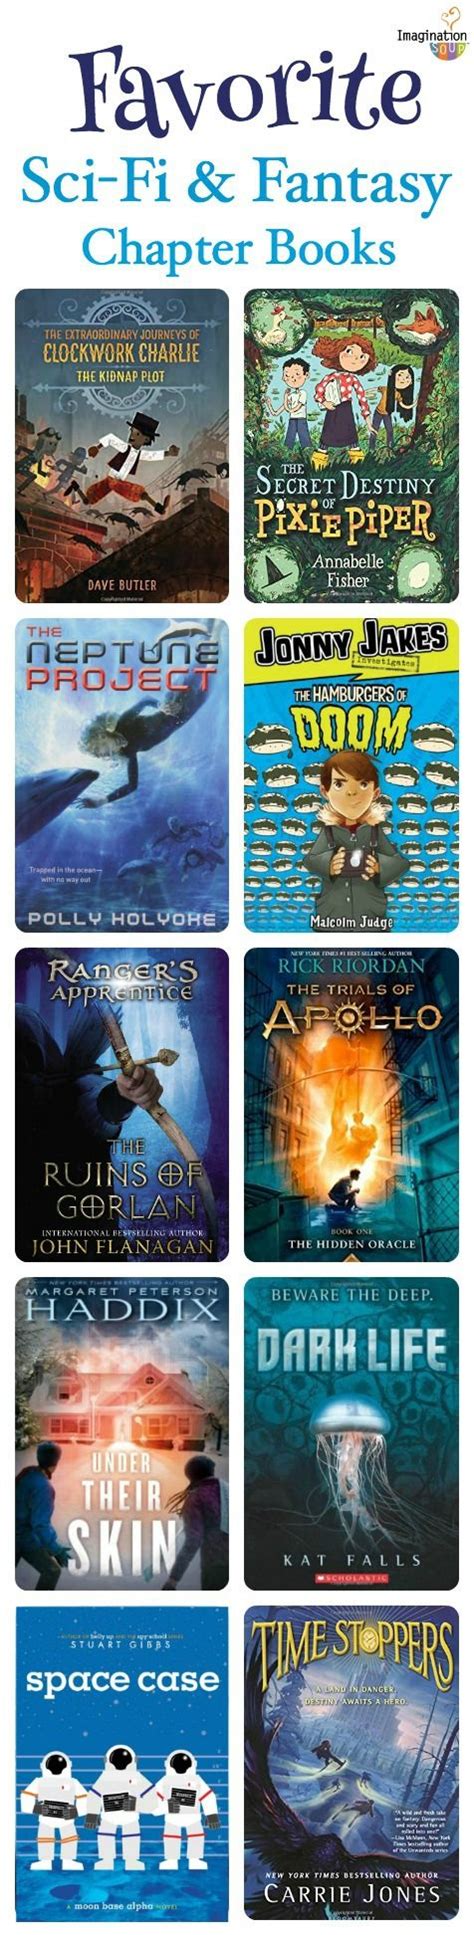 Random house children's books 66. Best science fiction books for 6th graders ...